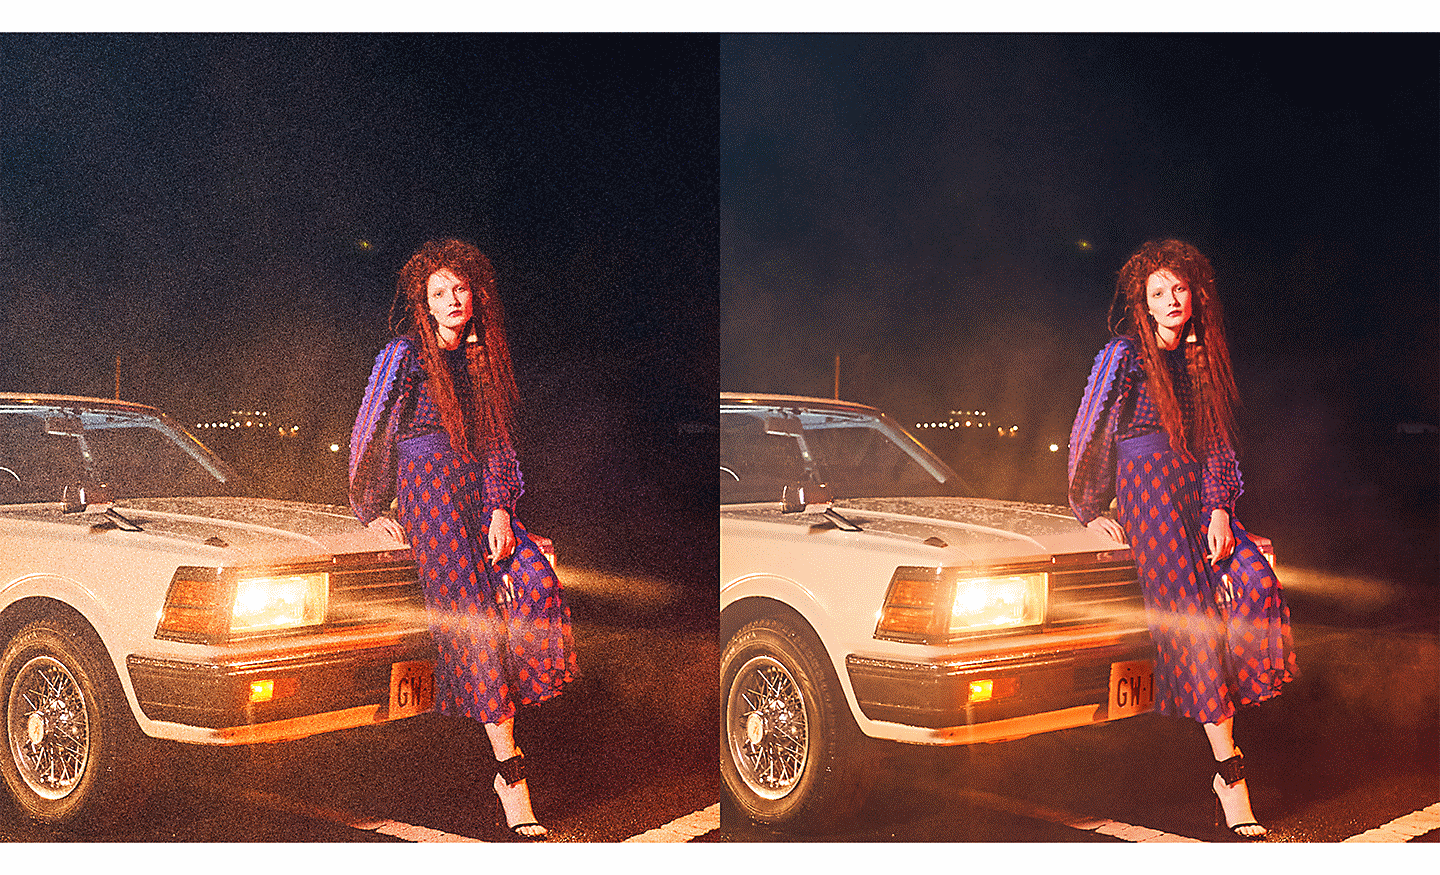 Două imagini ale unei femei care se sprijină de mașină, una cu un nivel mai redus de zgomot decât cealaltă.